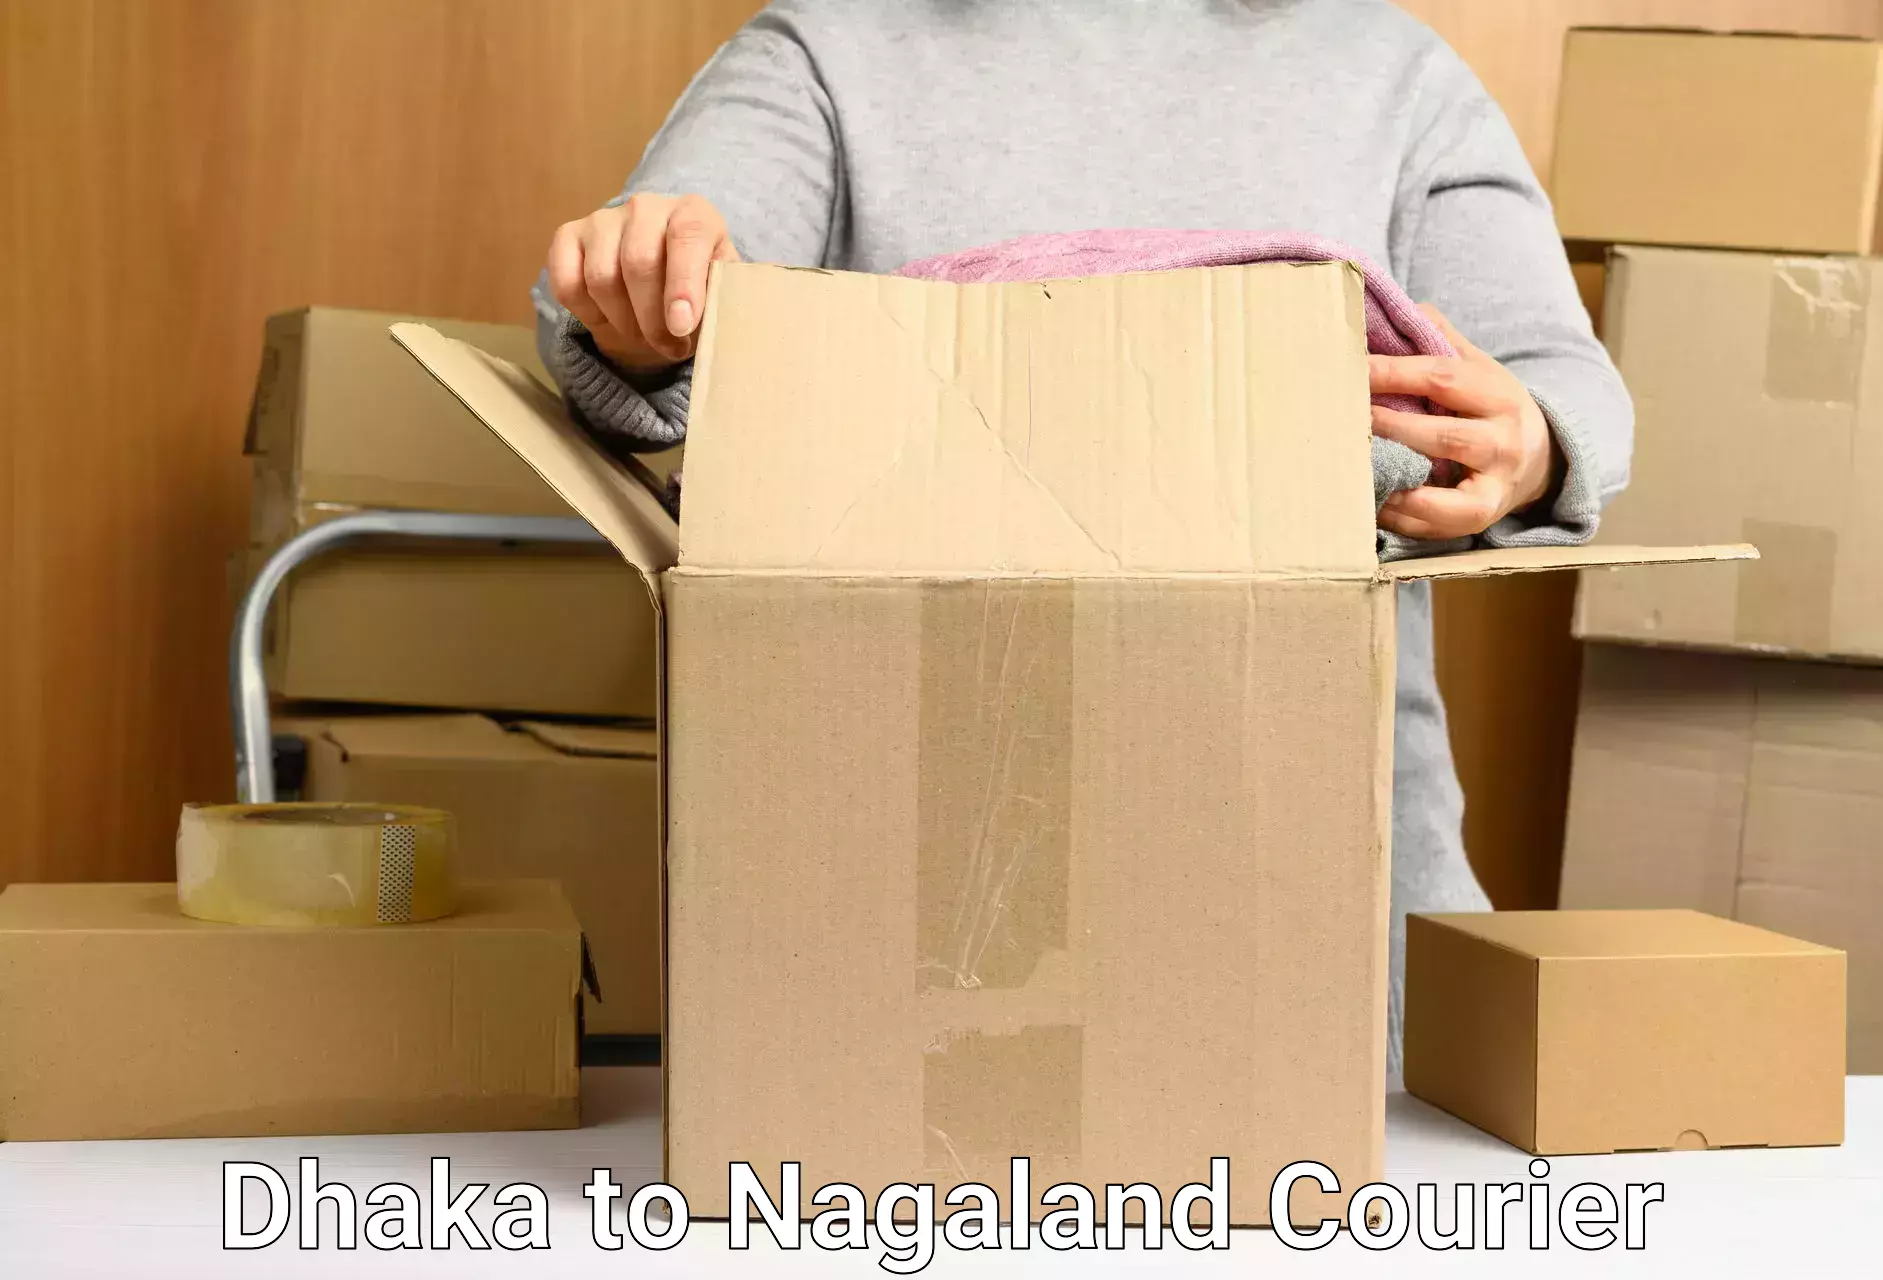 Urgent courier needs Dhaka to Nagaland